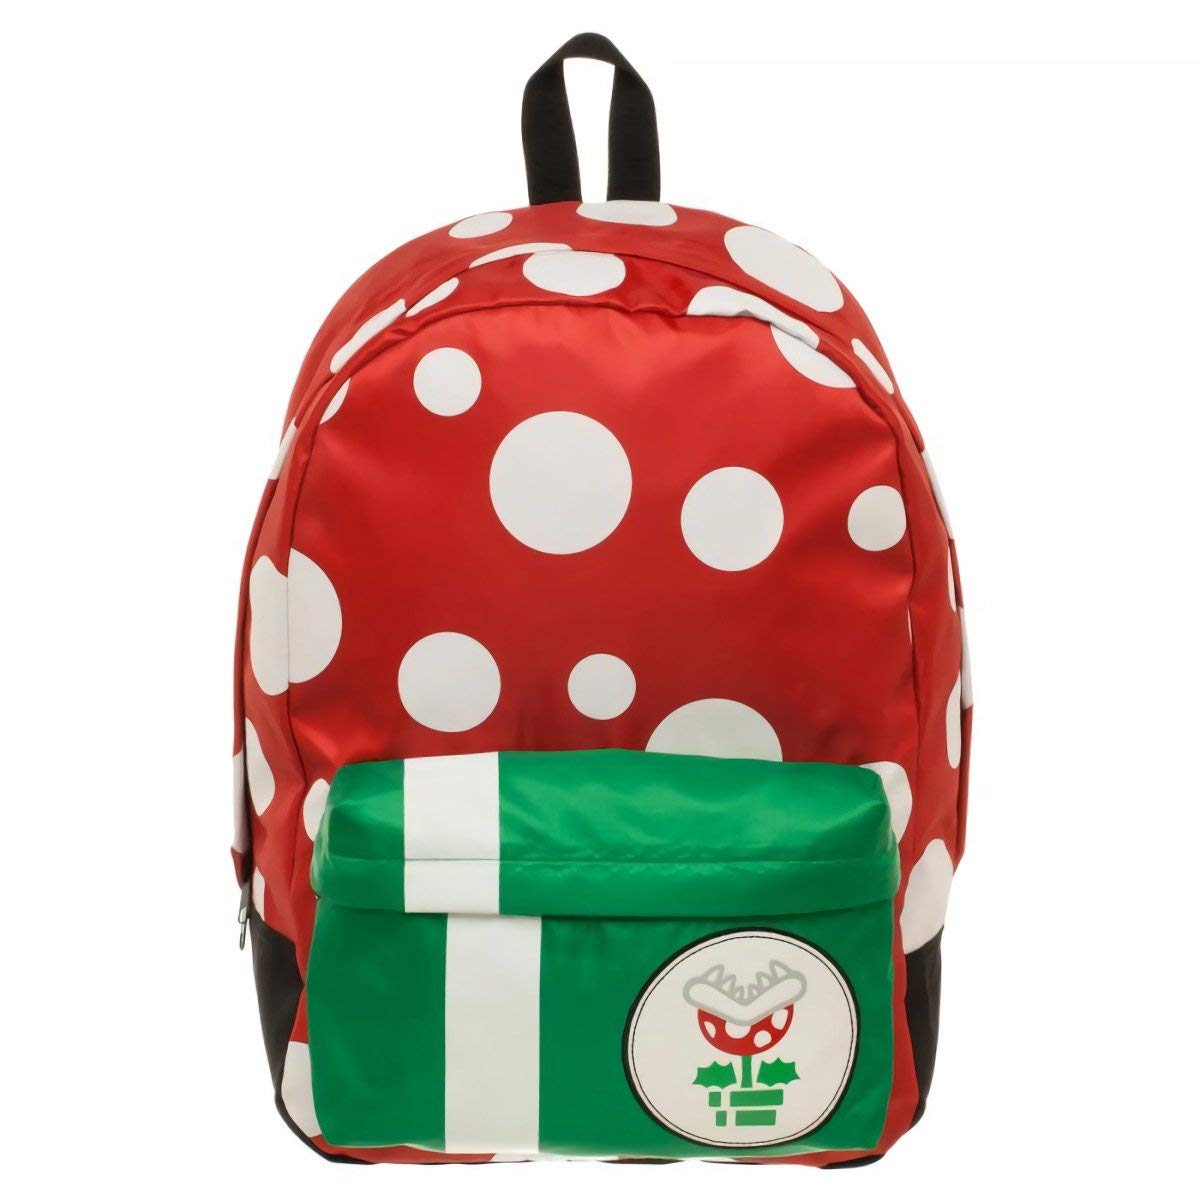 Super Mario Mushroom Backpack